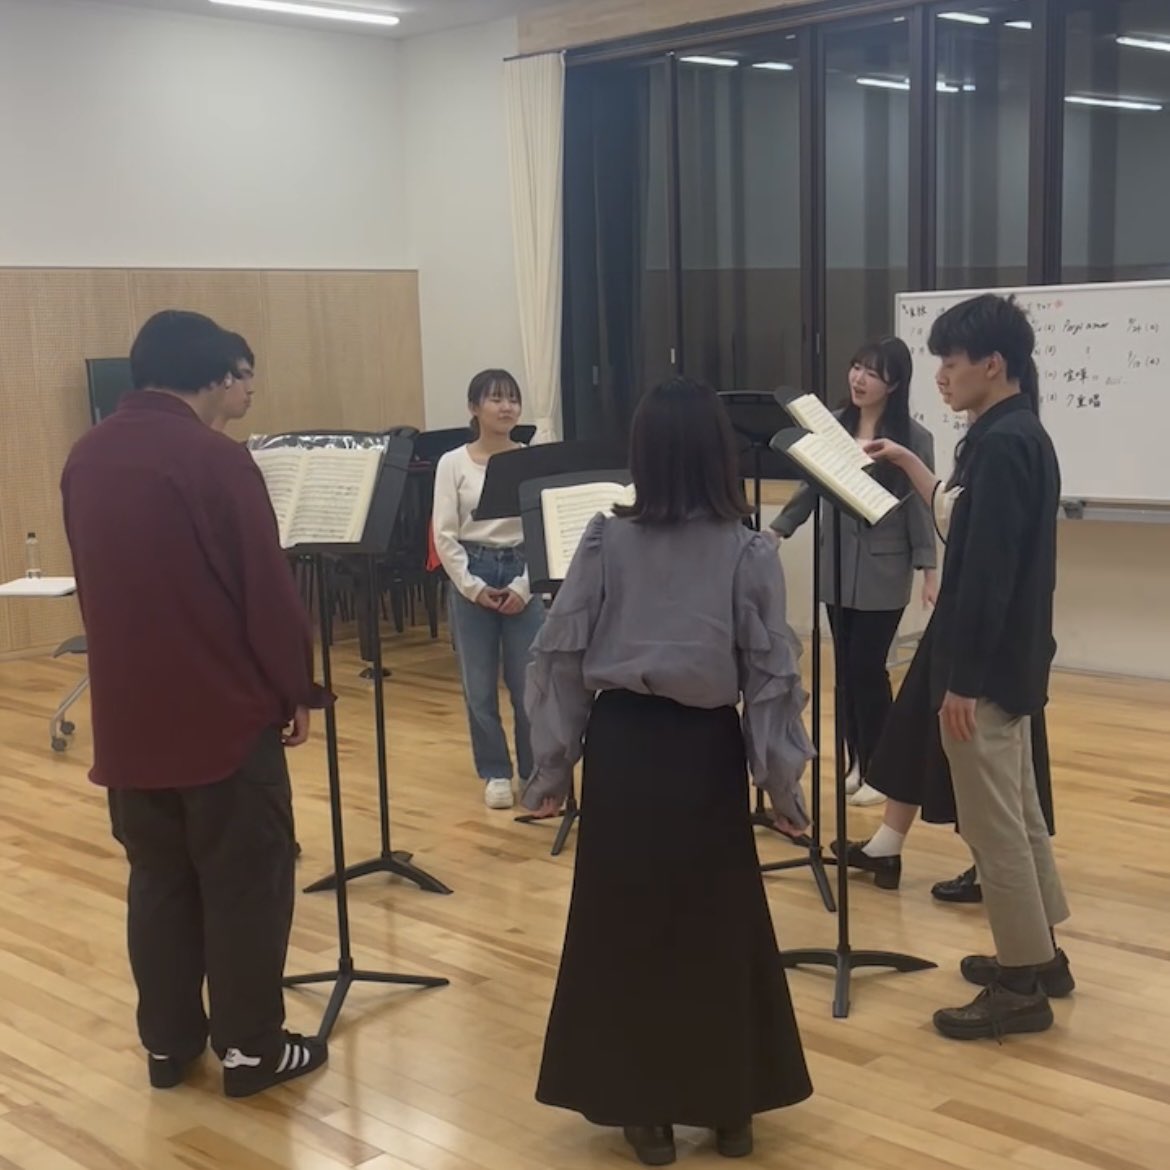 5月の練習風景です🍃🌱

7重唱の練習から始まり、それぞれのアリアやたくさんの重唱の練習をがんばっています.•♬

#桜美林大学 #声楽ゼミ #オペラ